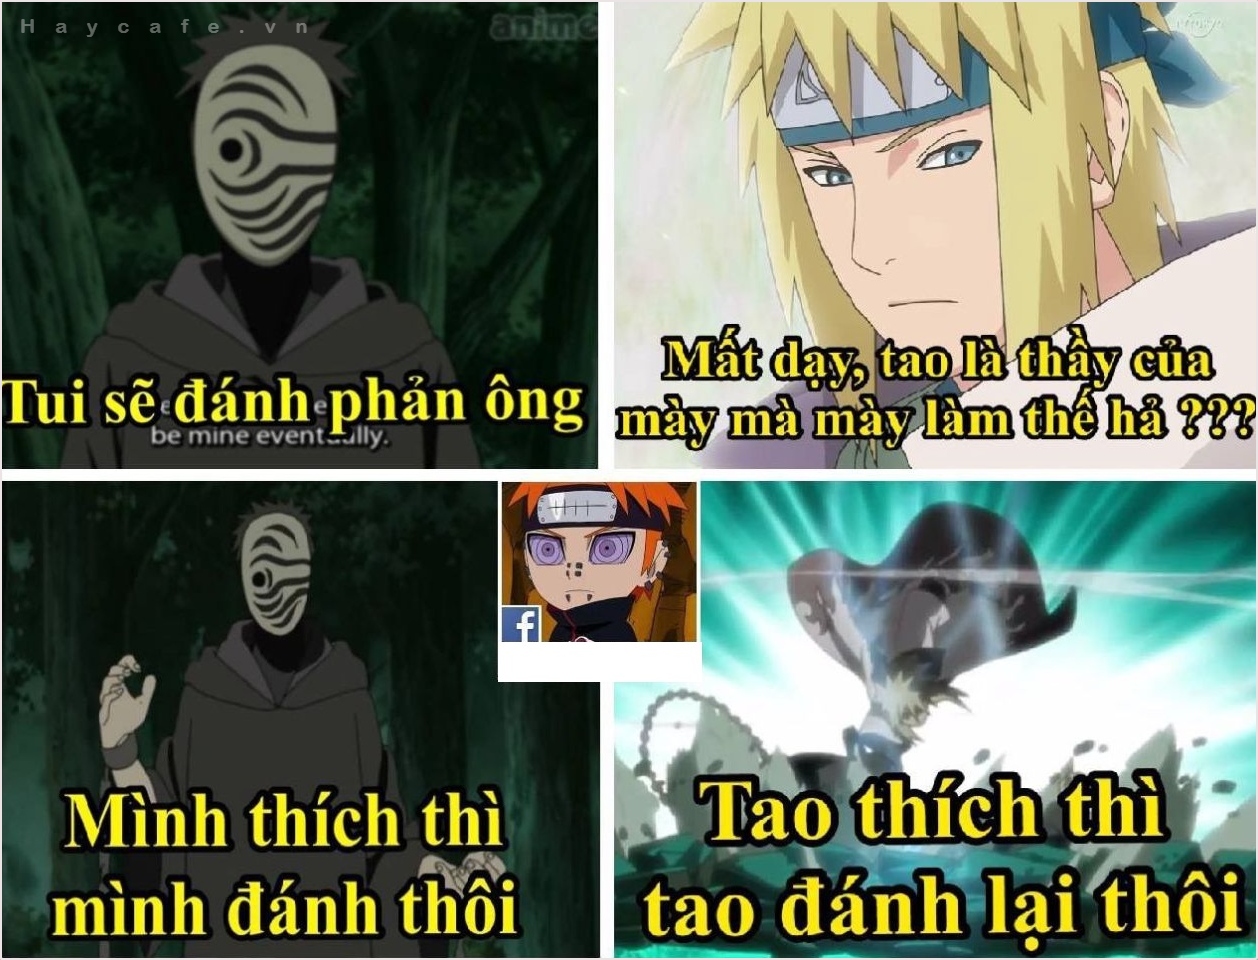 Ảnh Naruto Chế Tiếng Việt Hài Hước, Bựa Nhất Làm Meme 